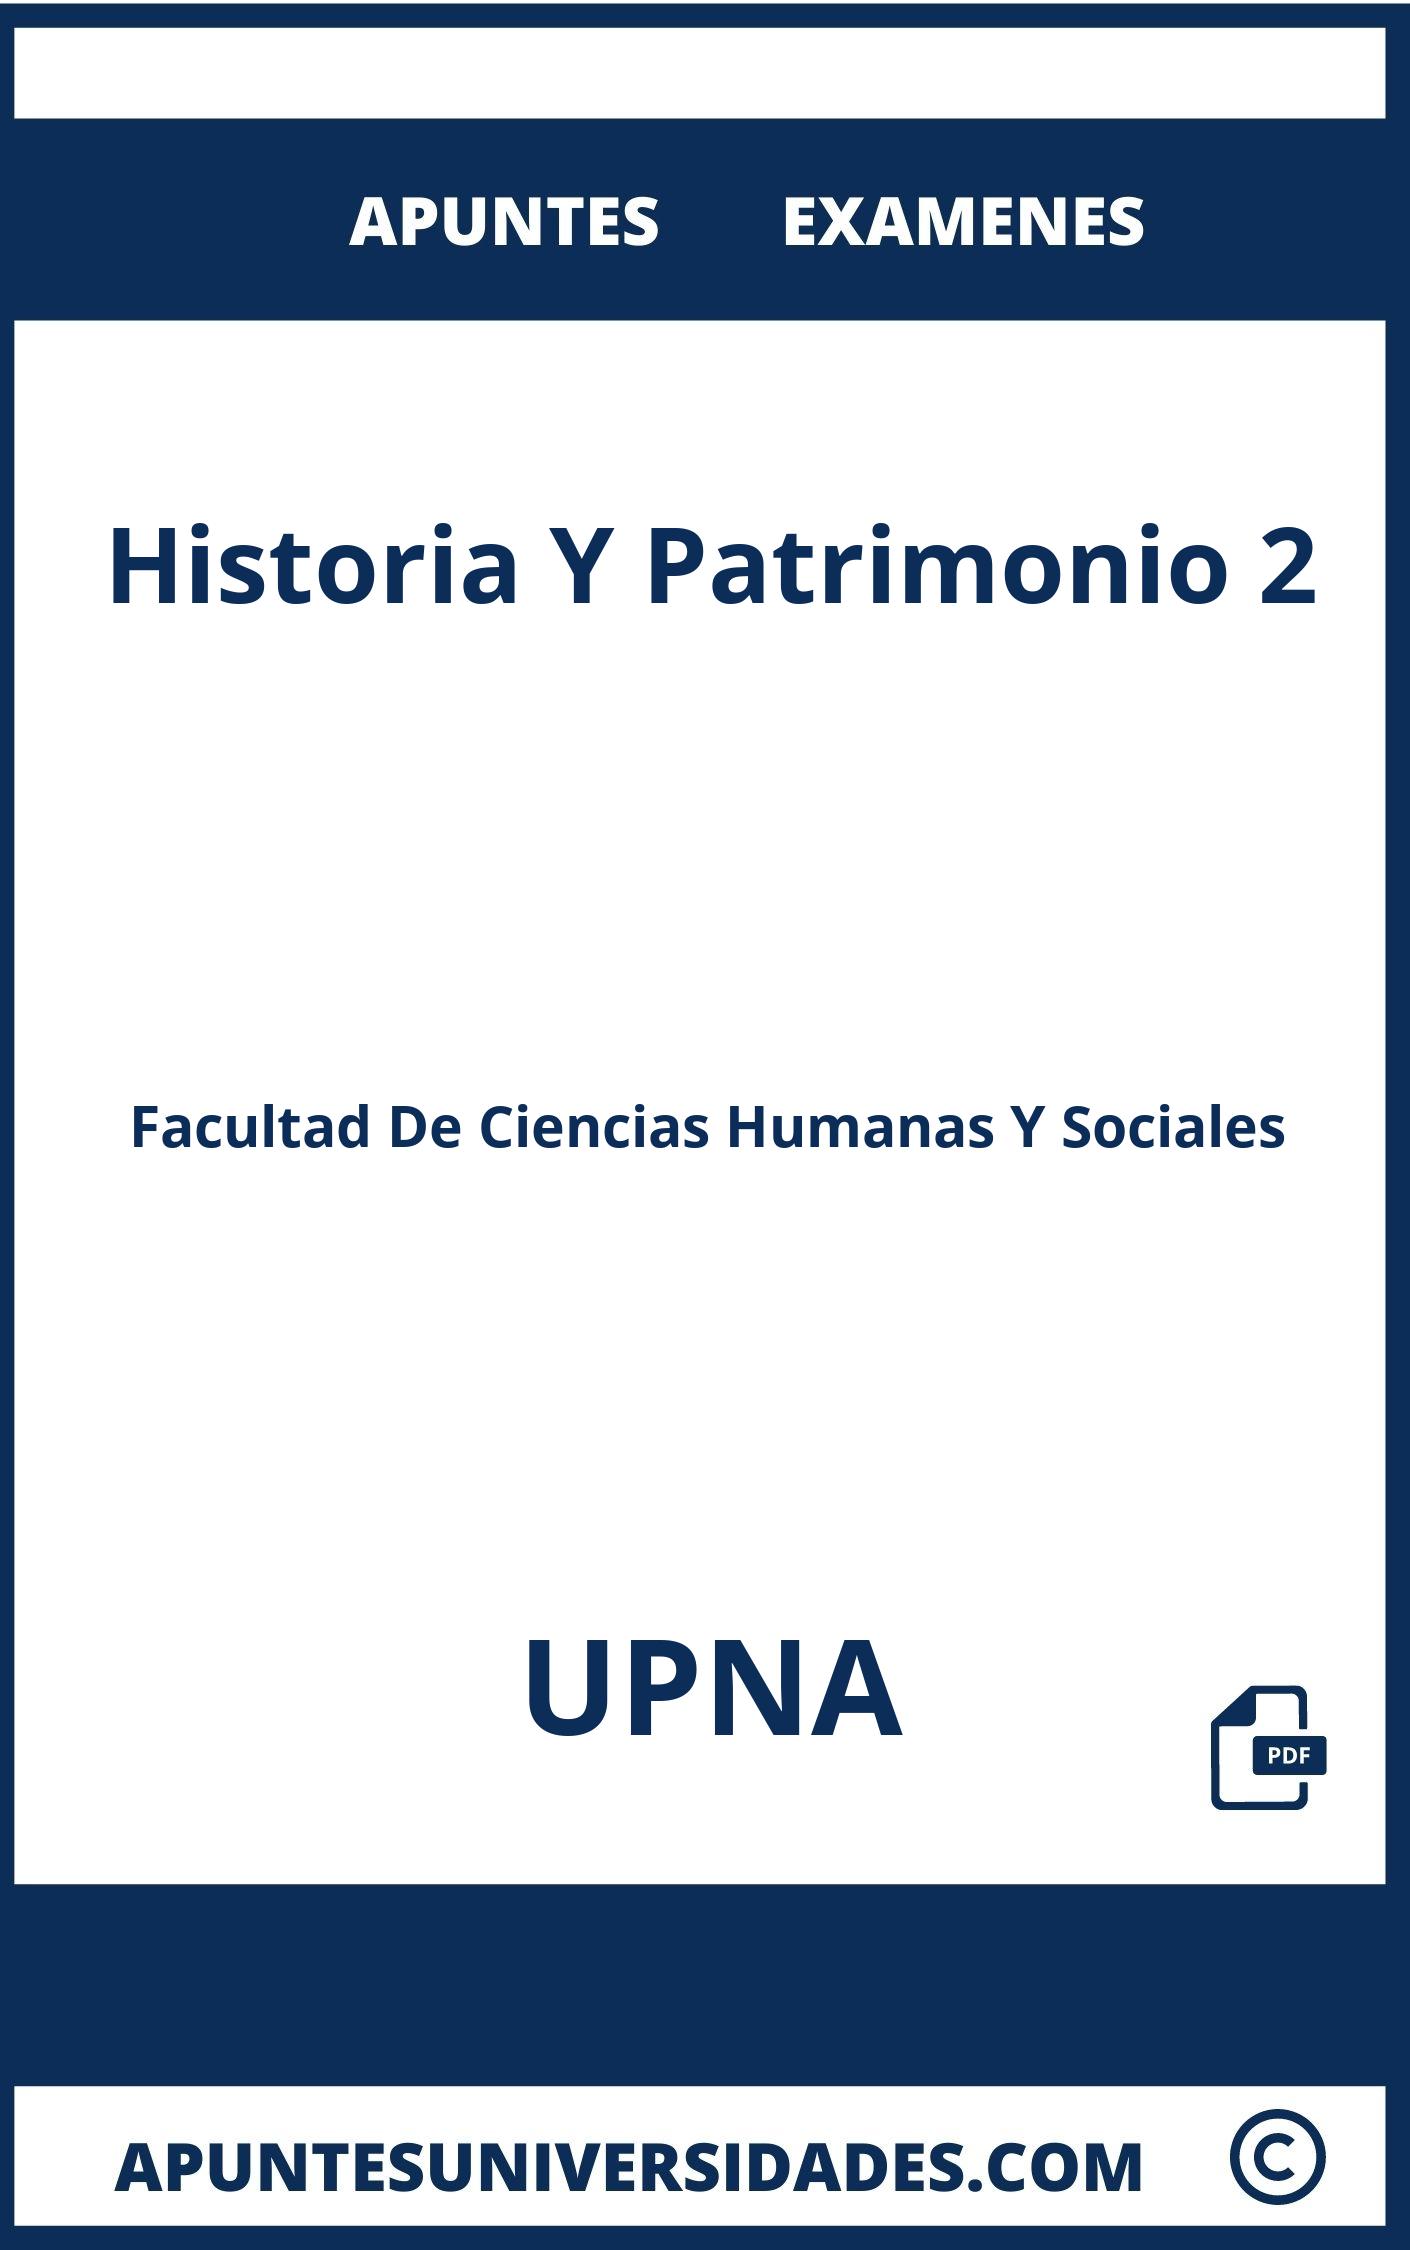 Apuntes y Examenes de Historia Y Patrimonio 2 UPNA